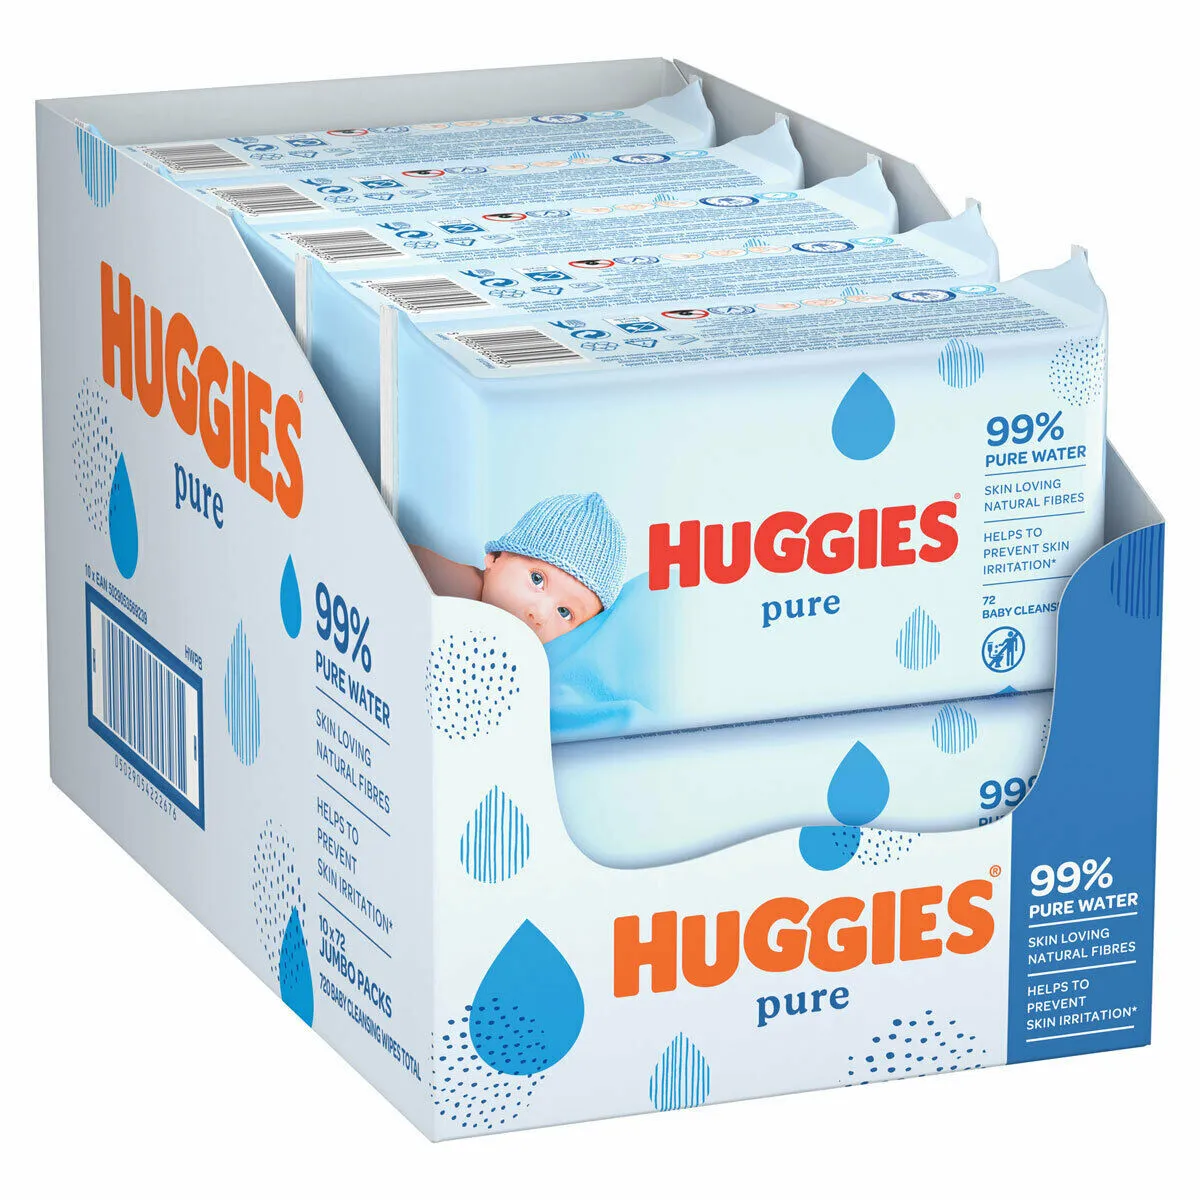 huggies 99 water